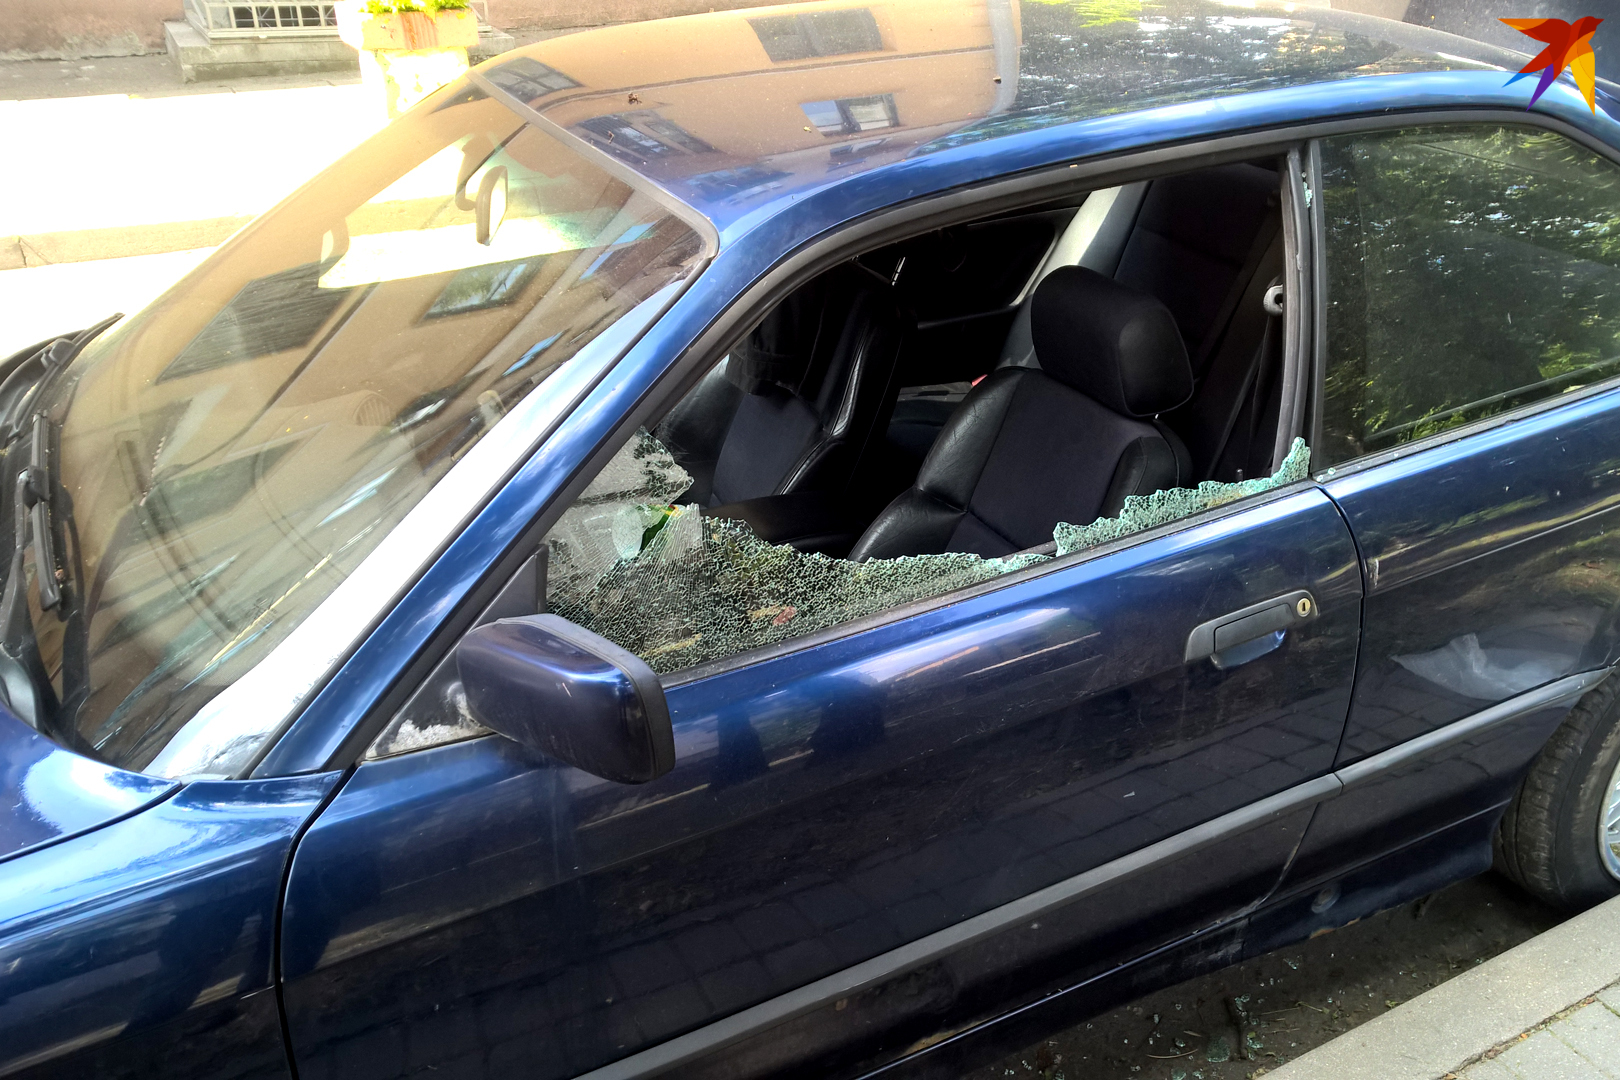 Разбитая машина во дворе. Разбитие бокового стекла. Разбитое боковое стекло. Разбили стекло в машине. Разбитое боковое стекло машины.